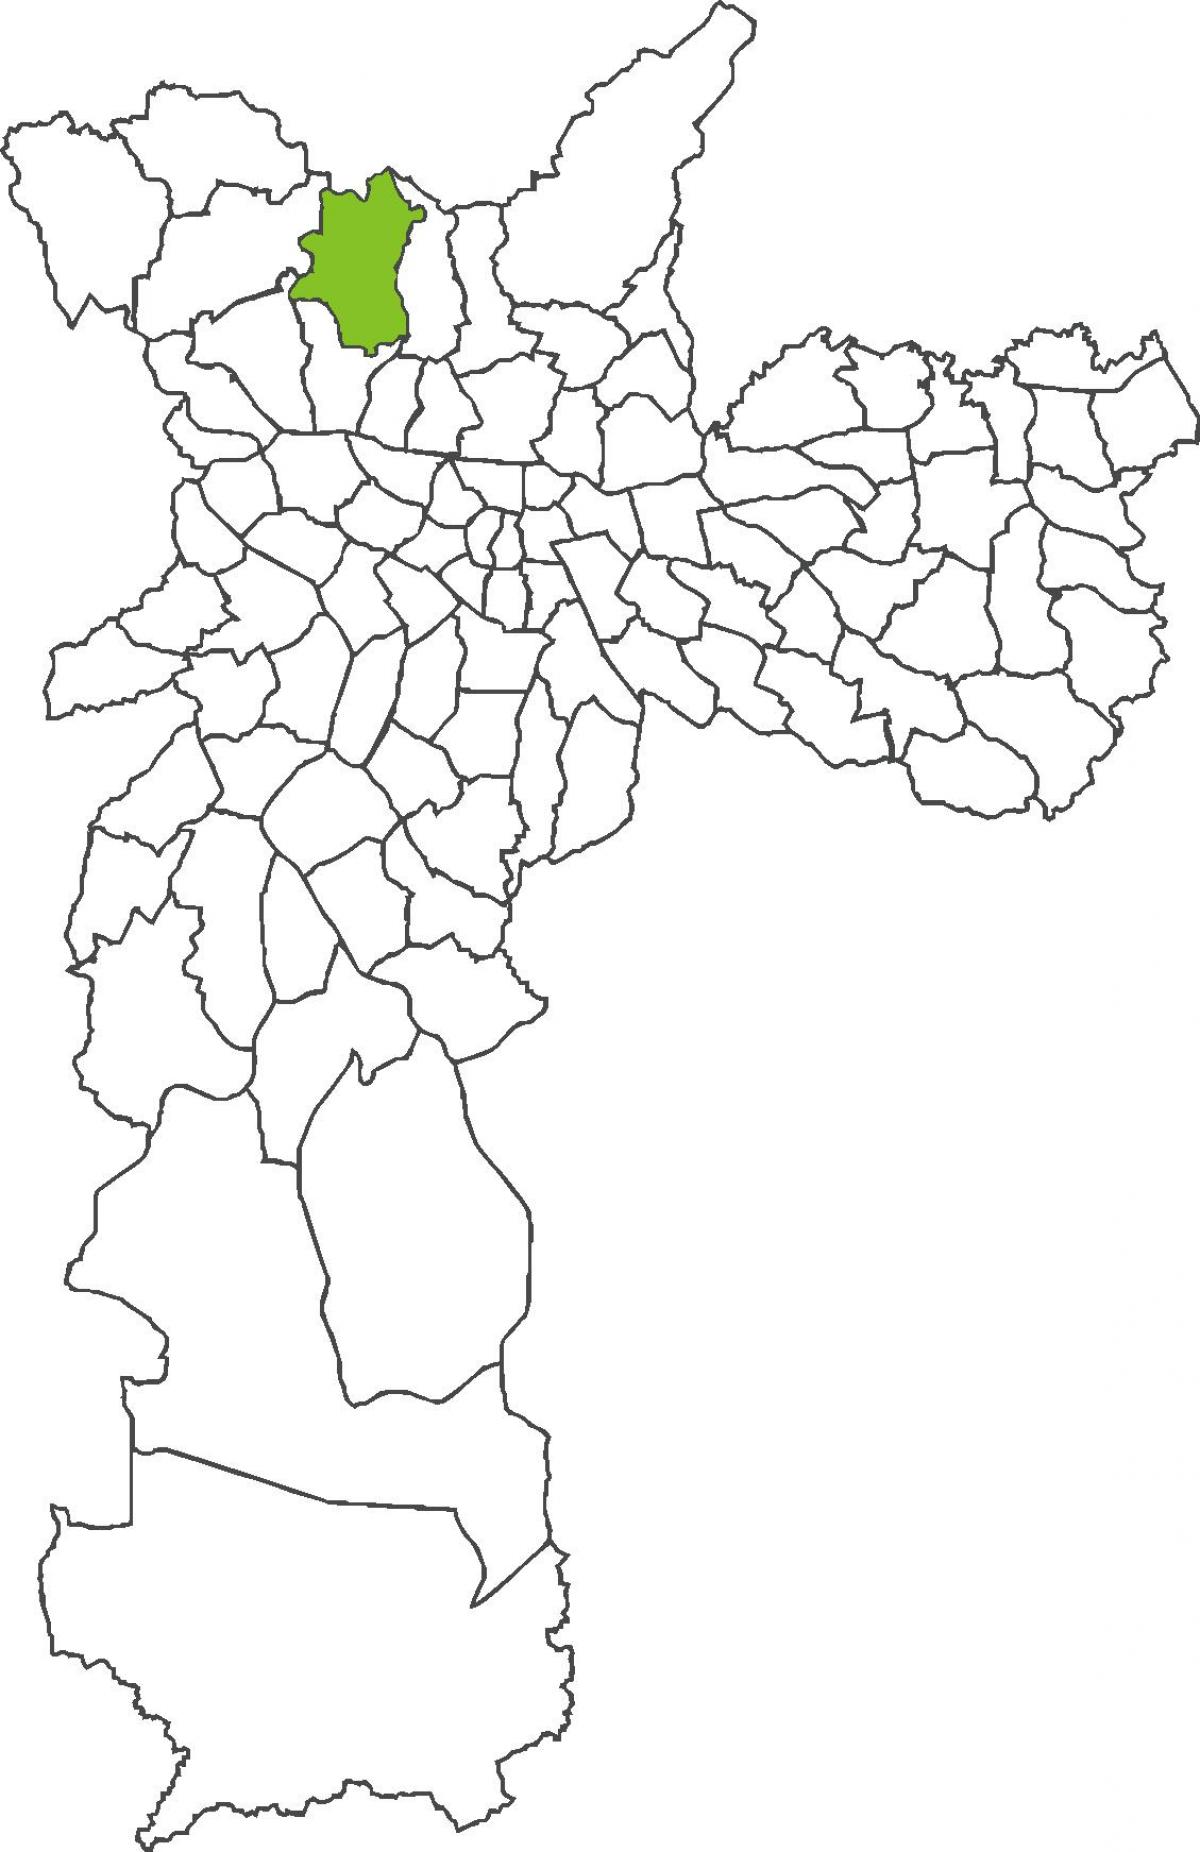 地图Brasilândia区